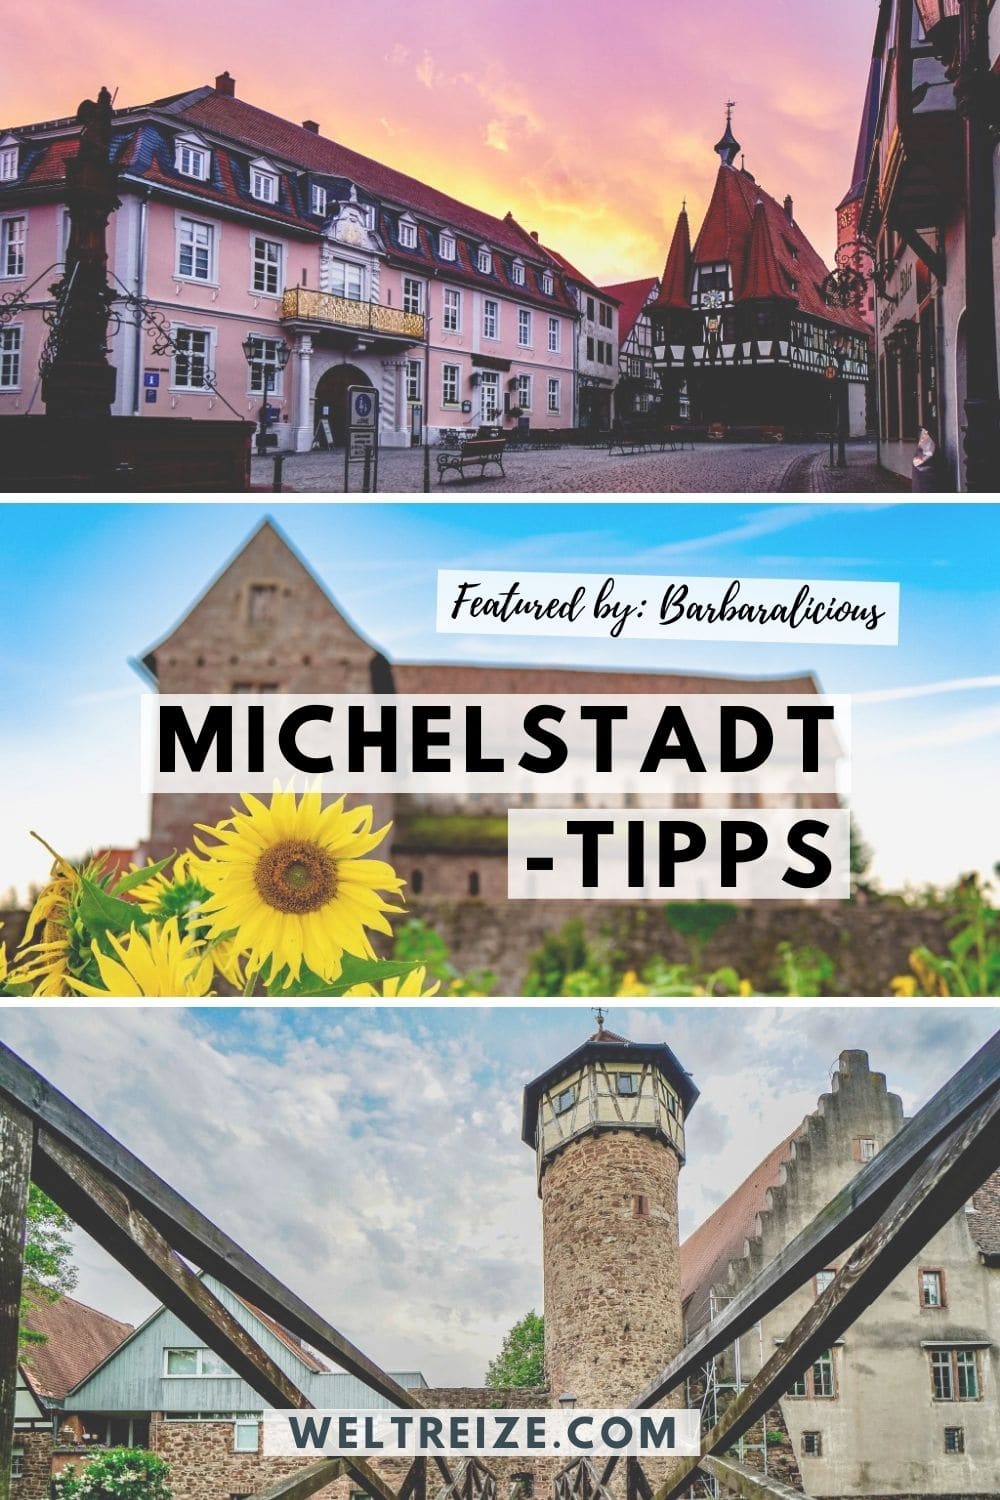 Michelstadt-Tipps weitersagen